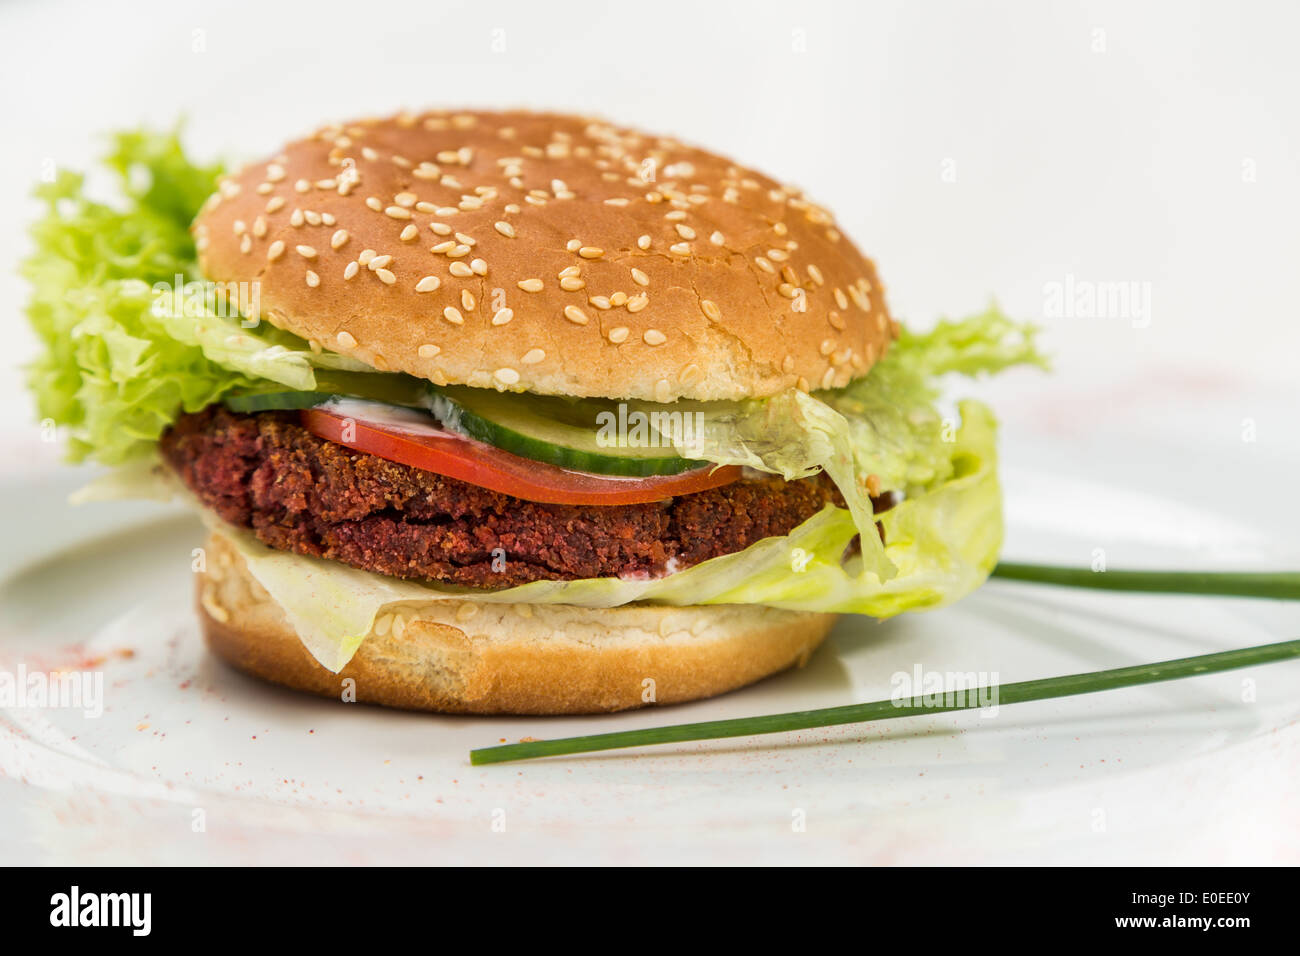 Burger végétarien avec légumes et grains escalope Banque D'Images